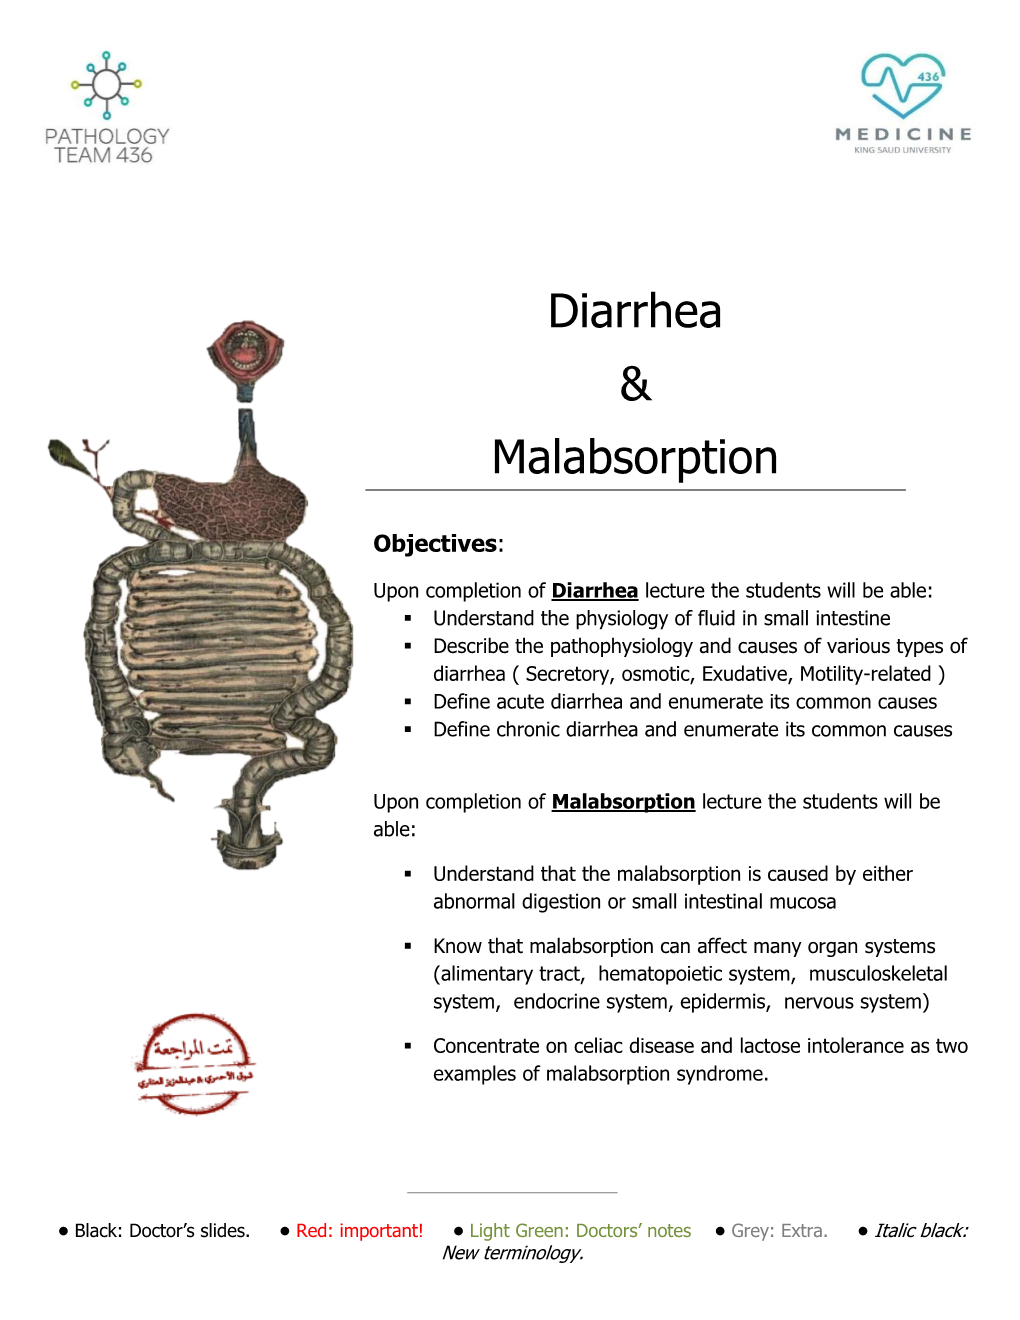 Diarrhea & Malabsorption